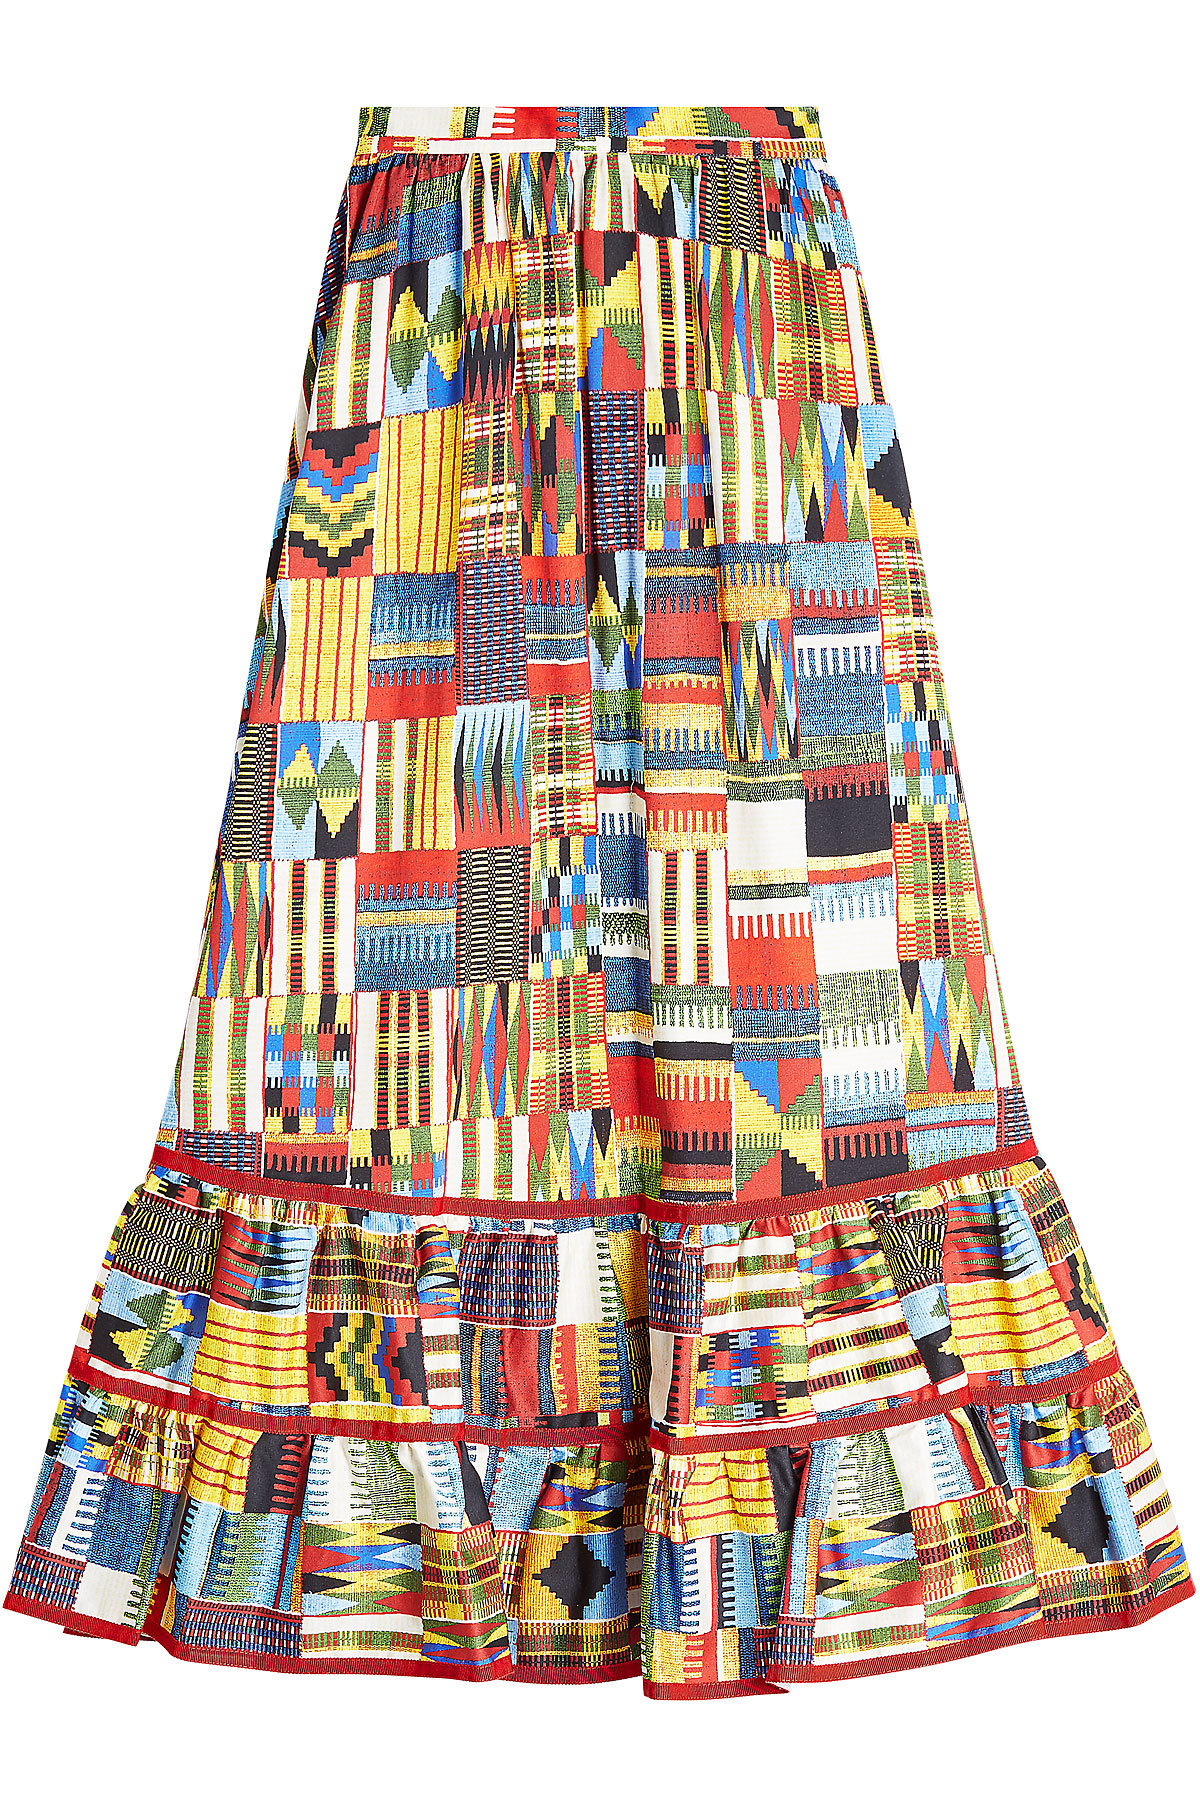 Stella Jean - Batik Printed Cotton Skirt